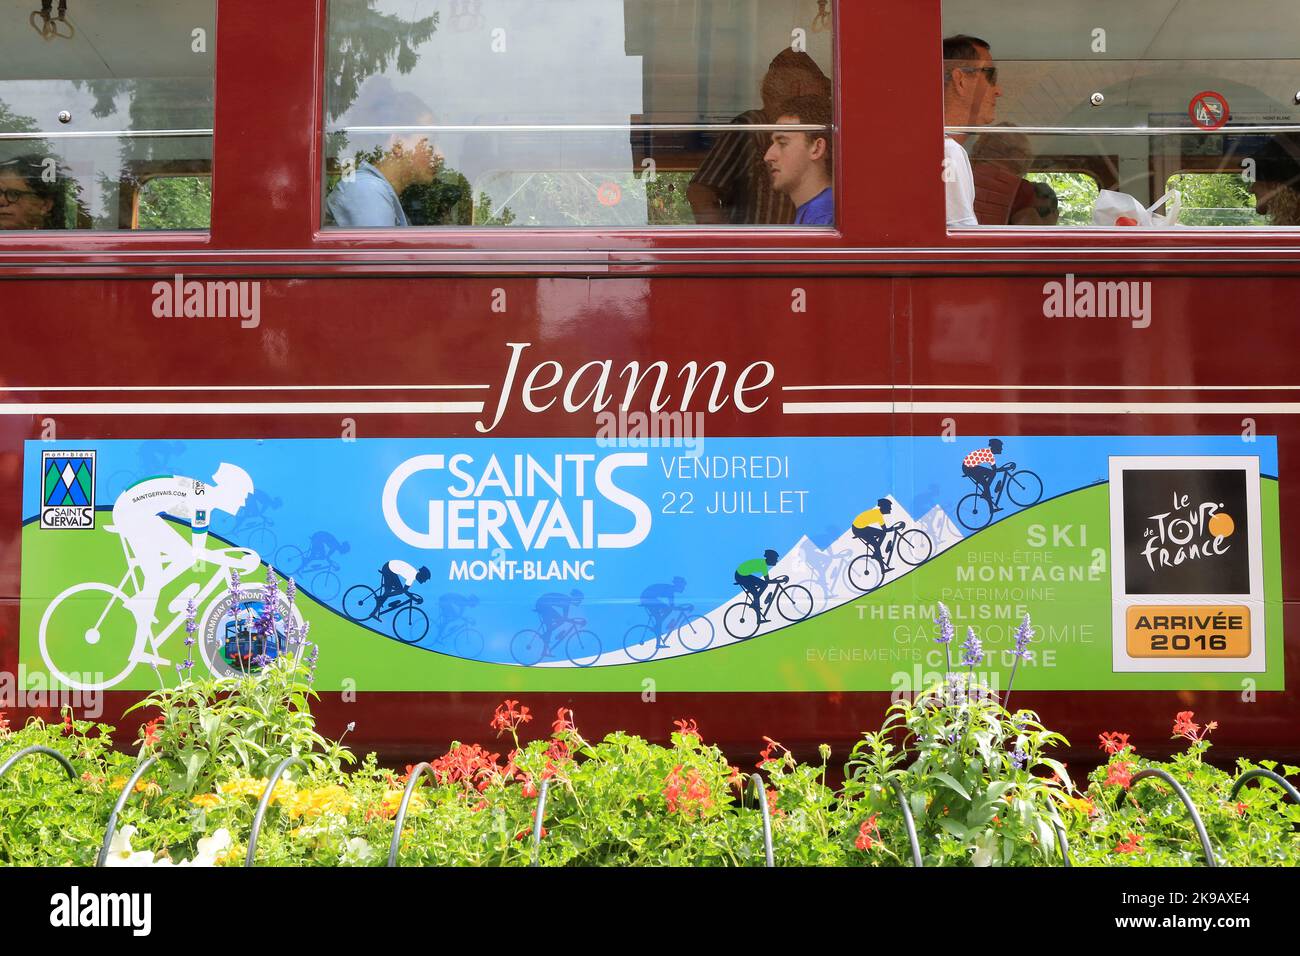 Le Tour de France. Affichage. Tramway du Mont-Blanc. Vendredi 22 juillet 2016. Saint-Gervais-les-Bains. Haute-Savoie. Auvergne-Rhône-Alpes. France. Eu Stock Photo